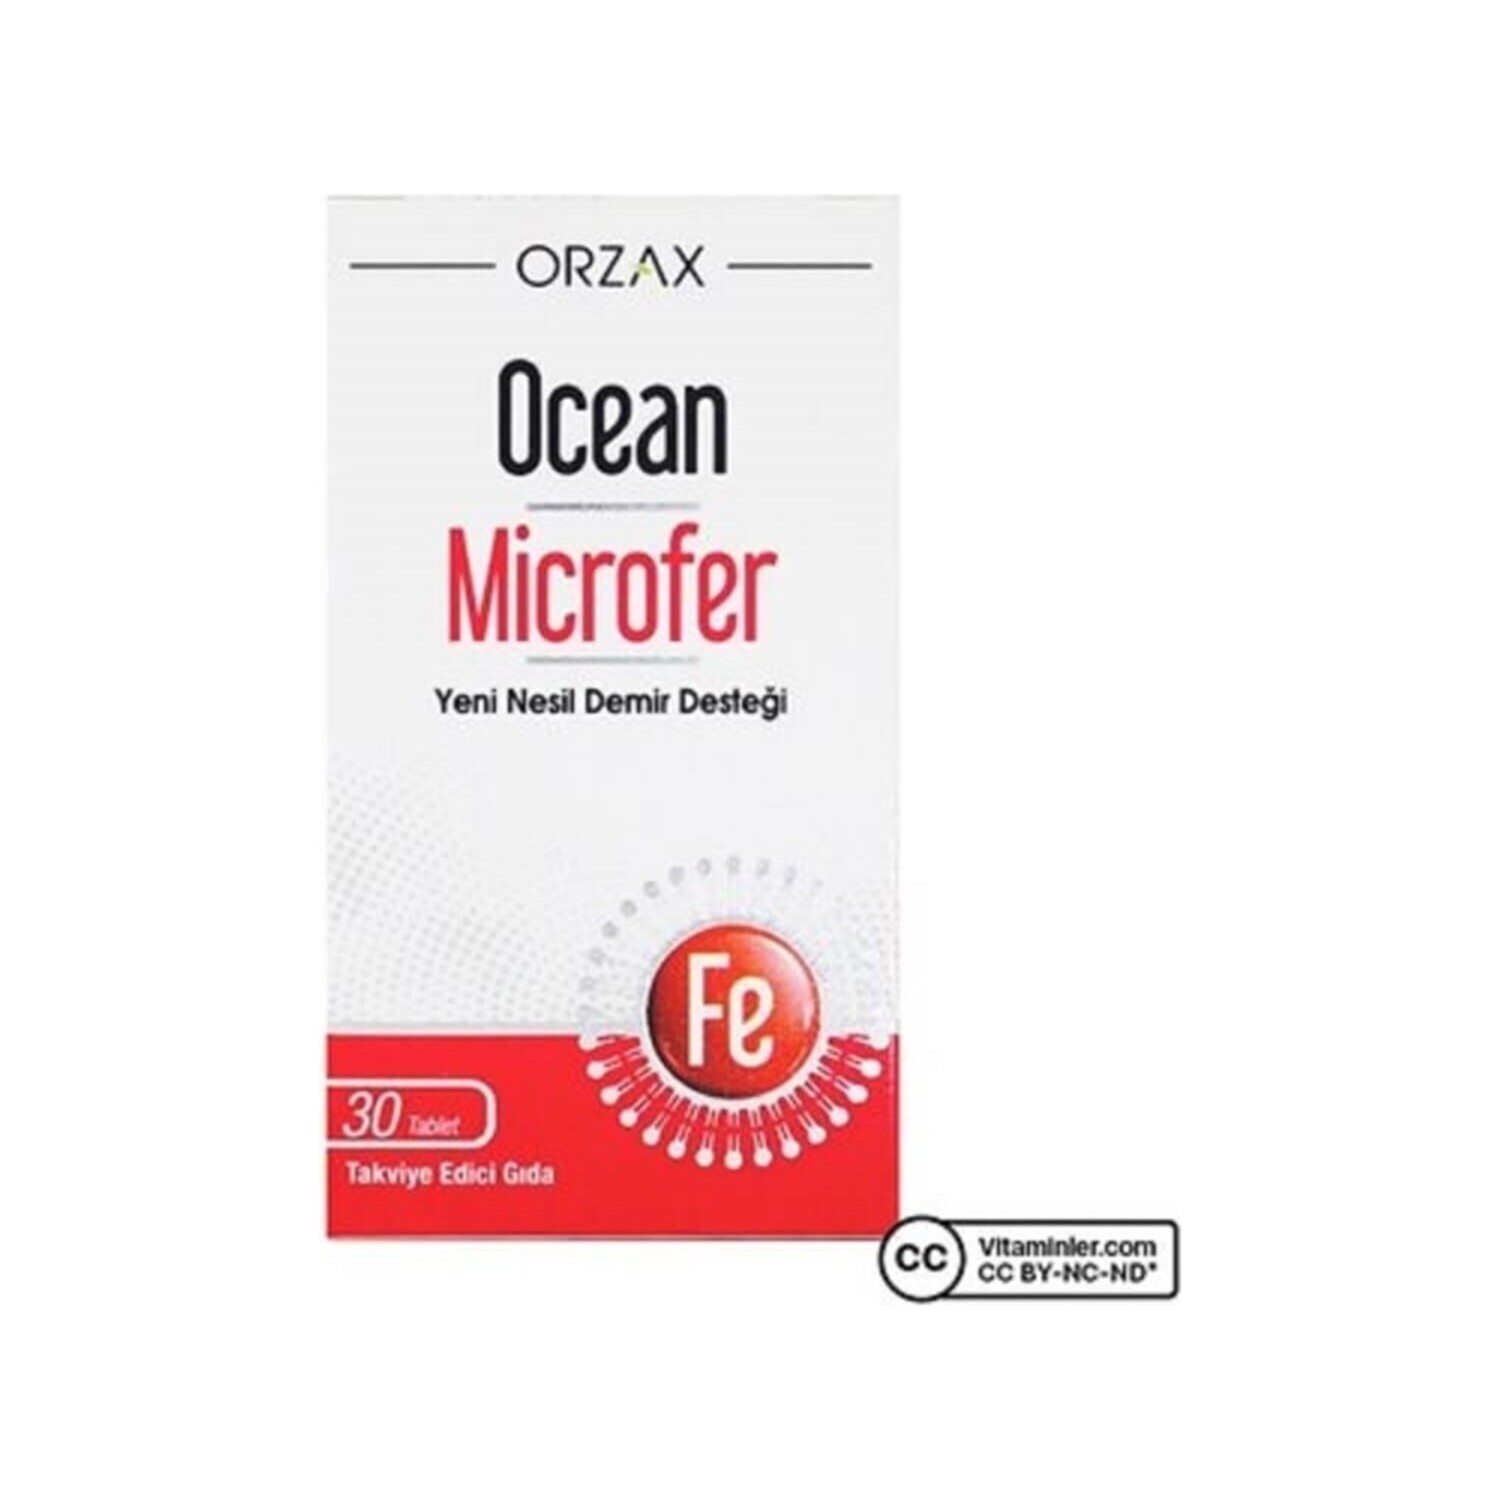 цена Микрофер Ocean, 30 таблеток